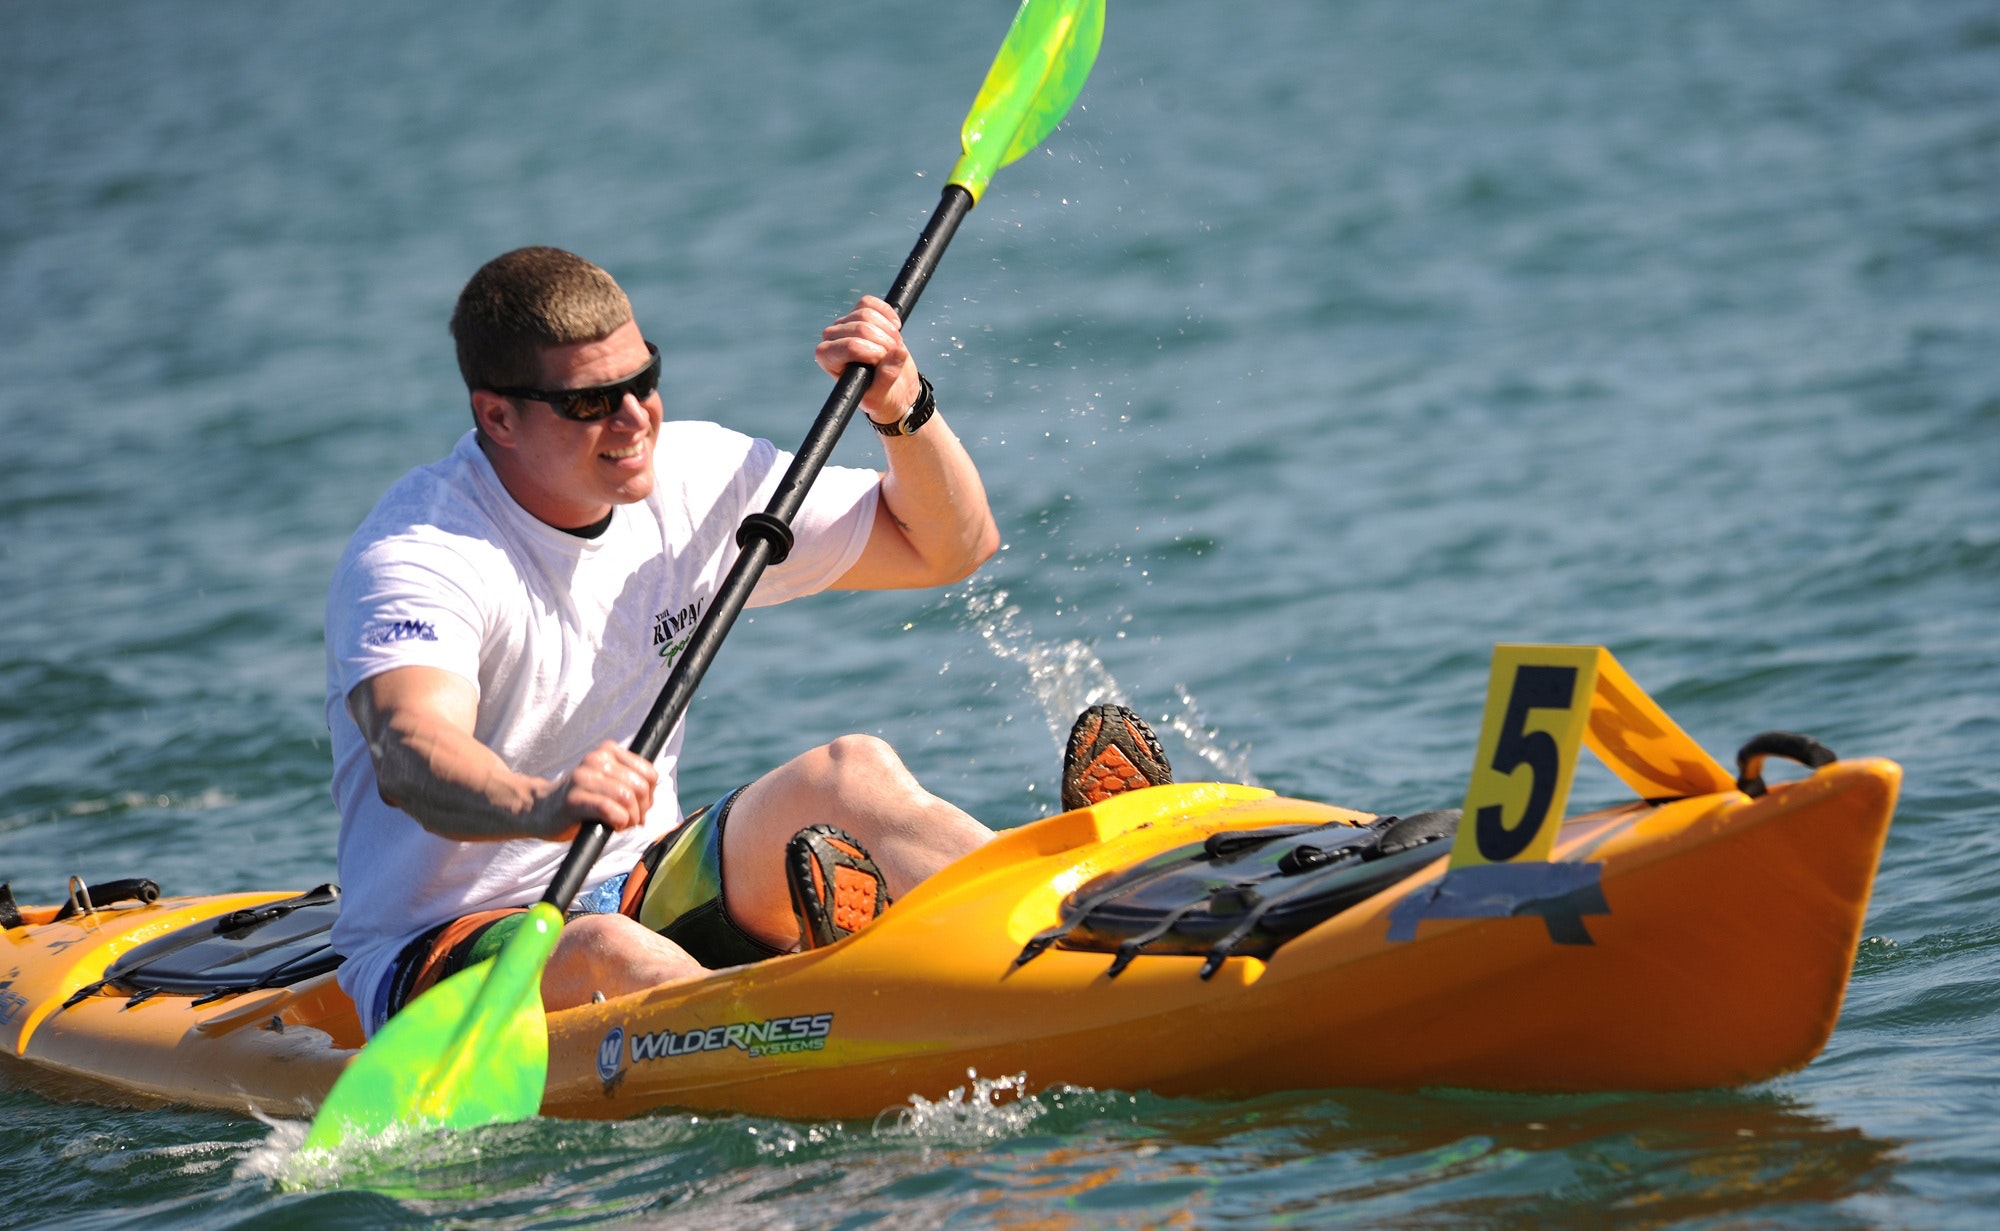 Smiling man in white crew neck t shirt wearing sunglasses paddling on yellow kayak during daytime photo